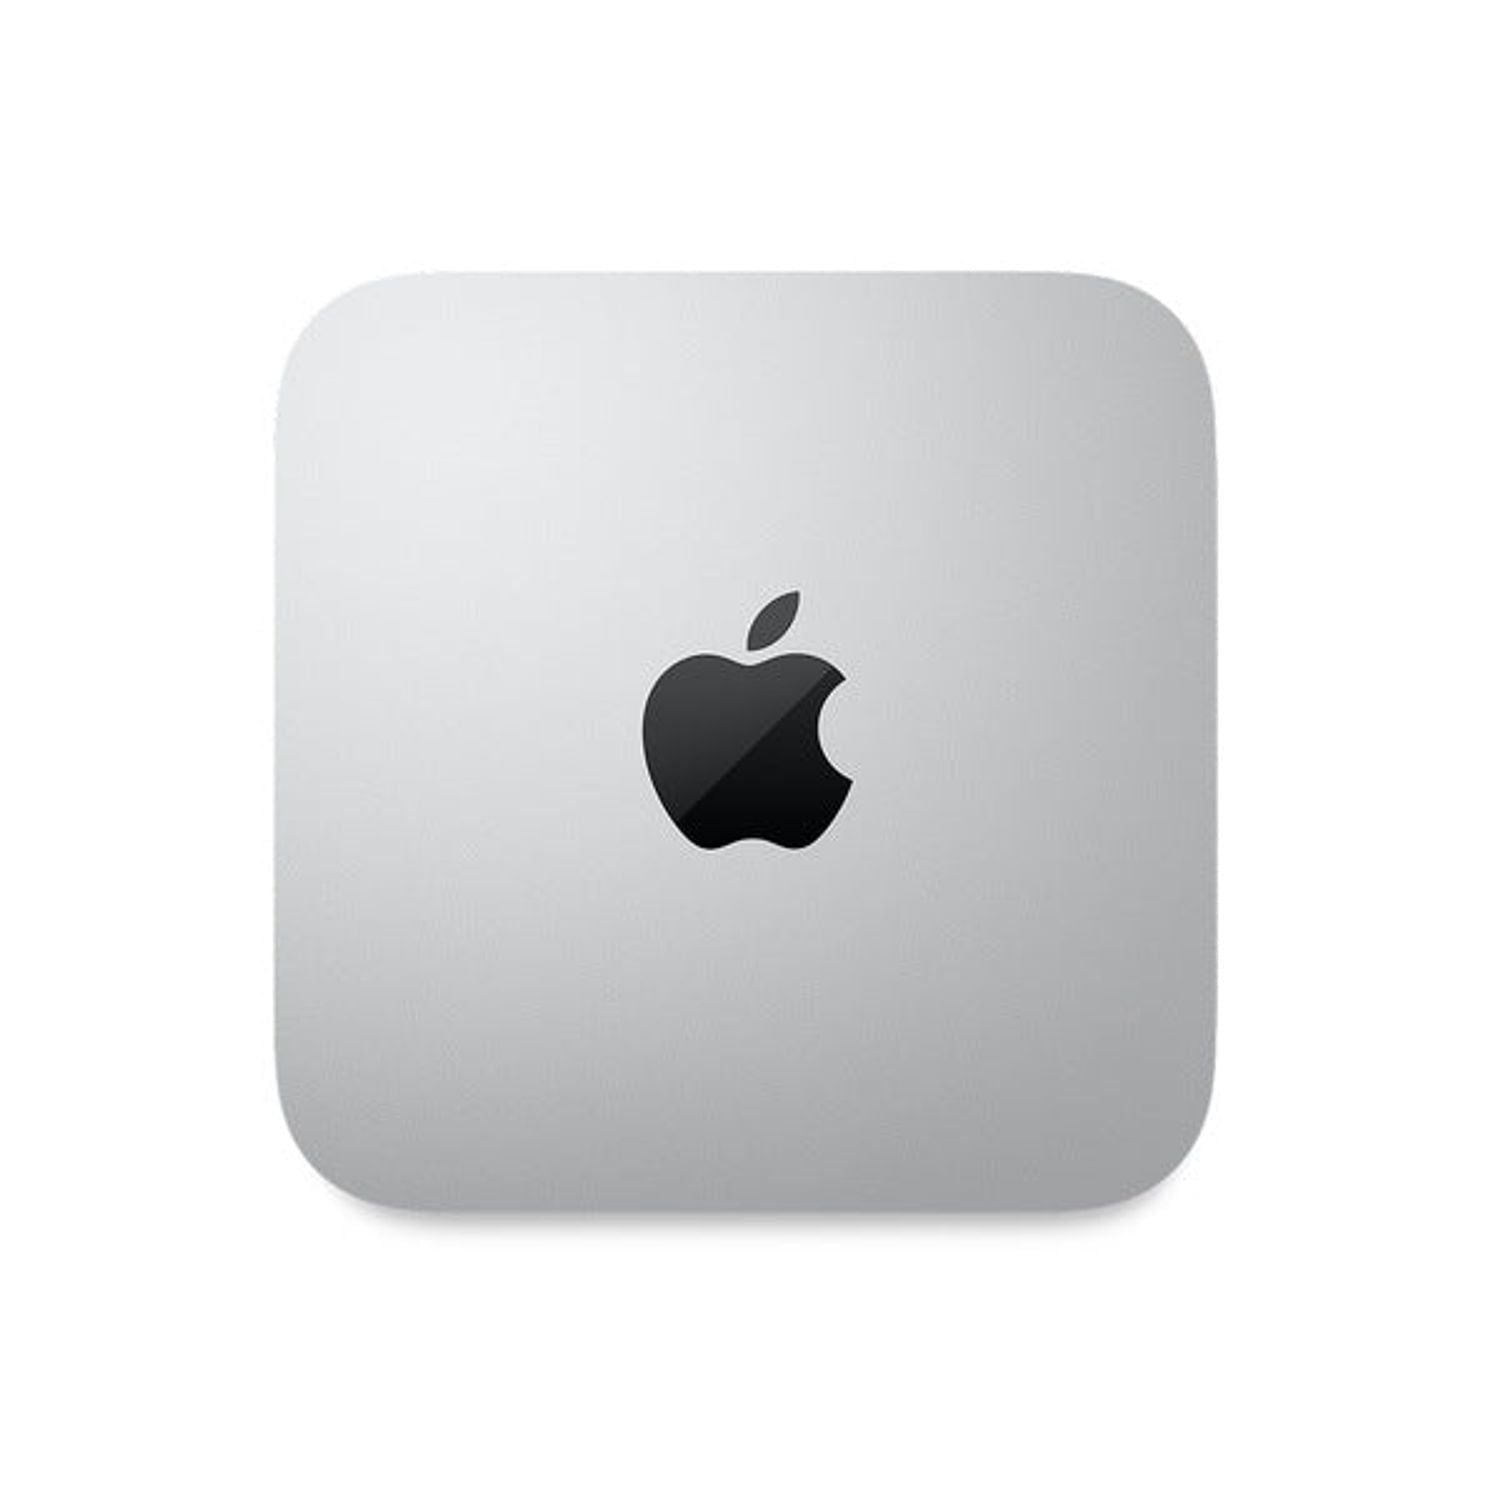 Mac mini - Chip Apple M1 con CPU de 8 núcleos y GPU de 8 núcleos, 8 GB de RAM unificada y SSD de 256 GB